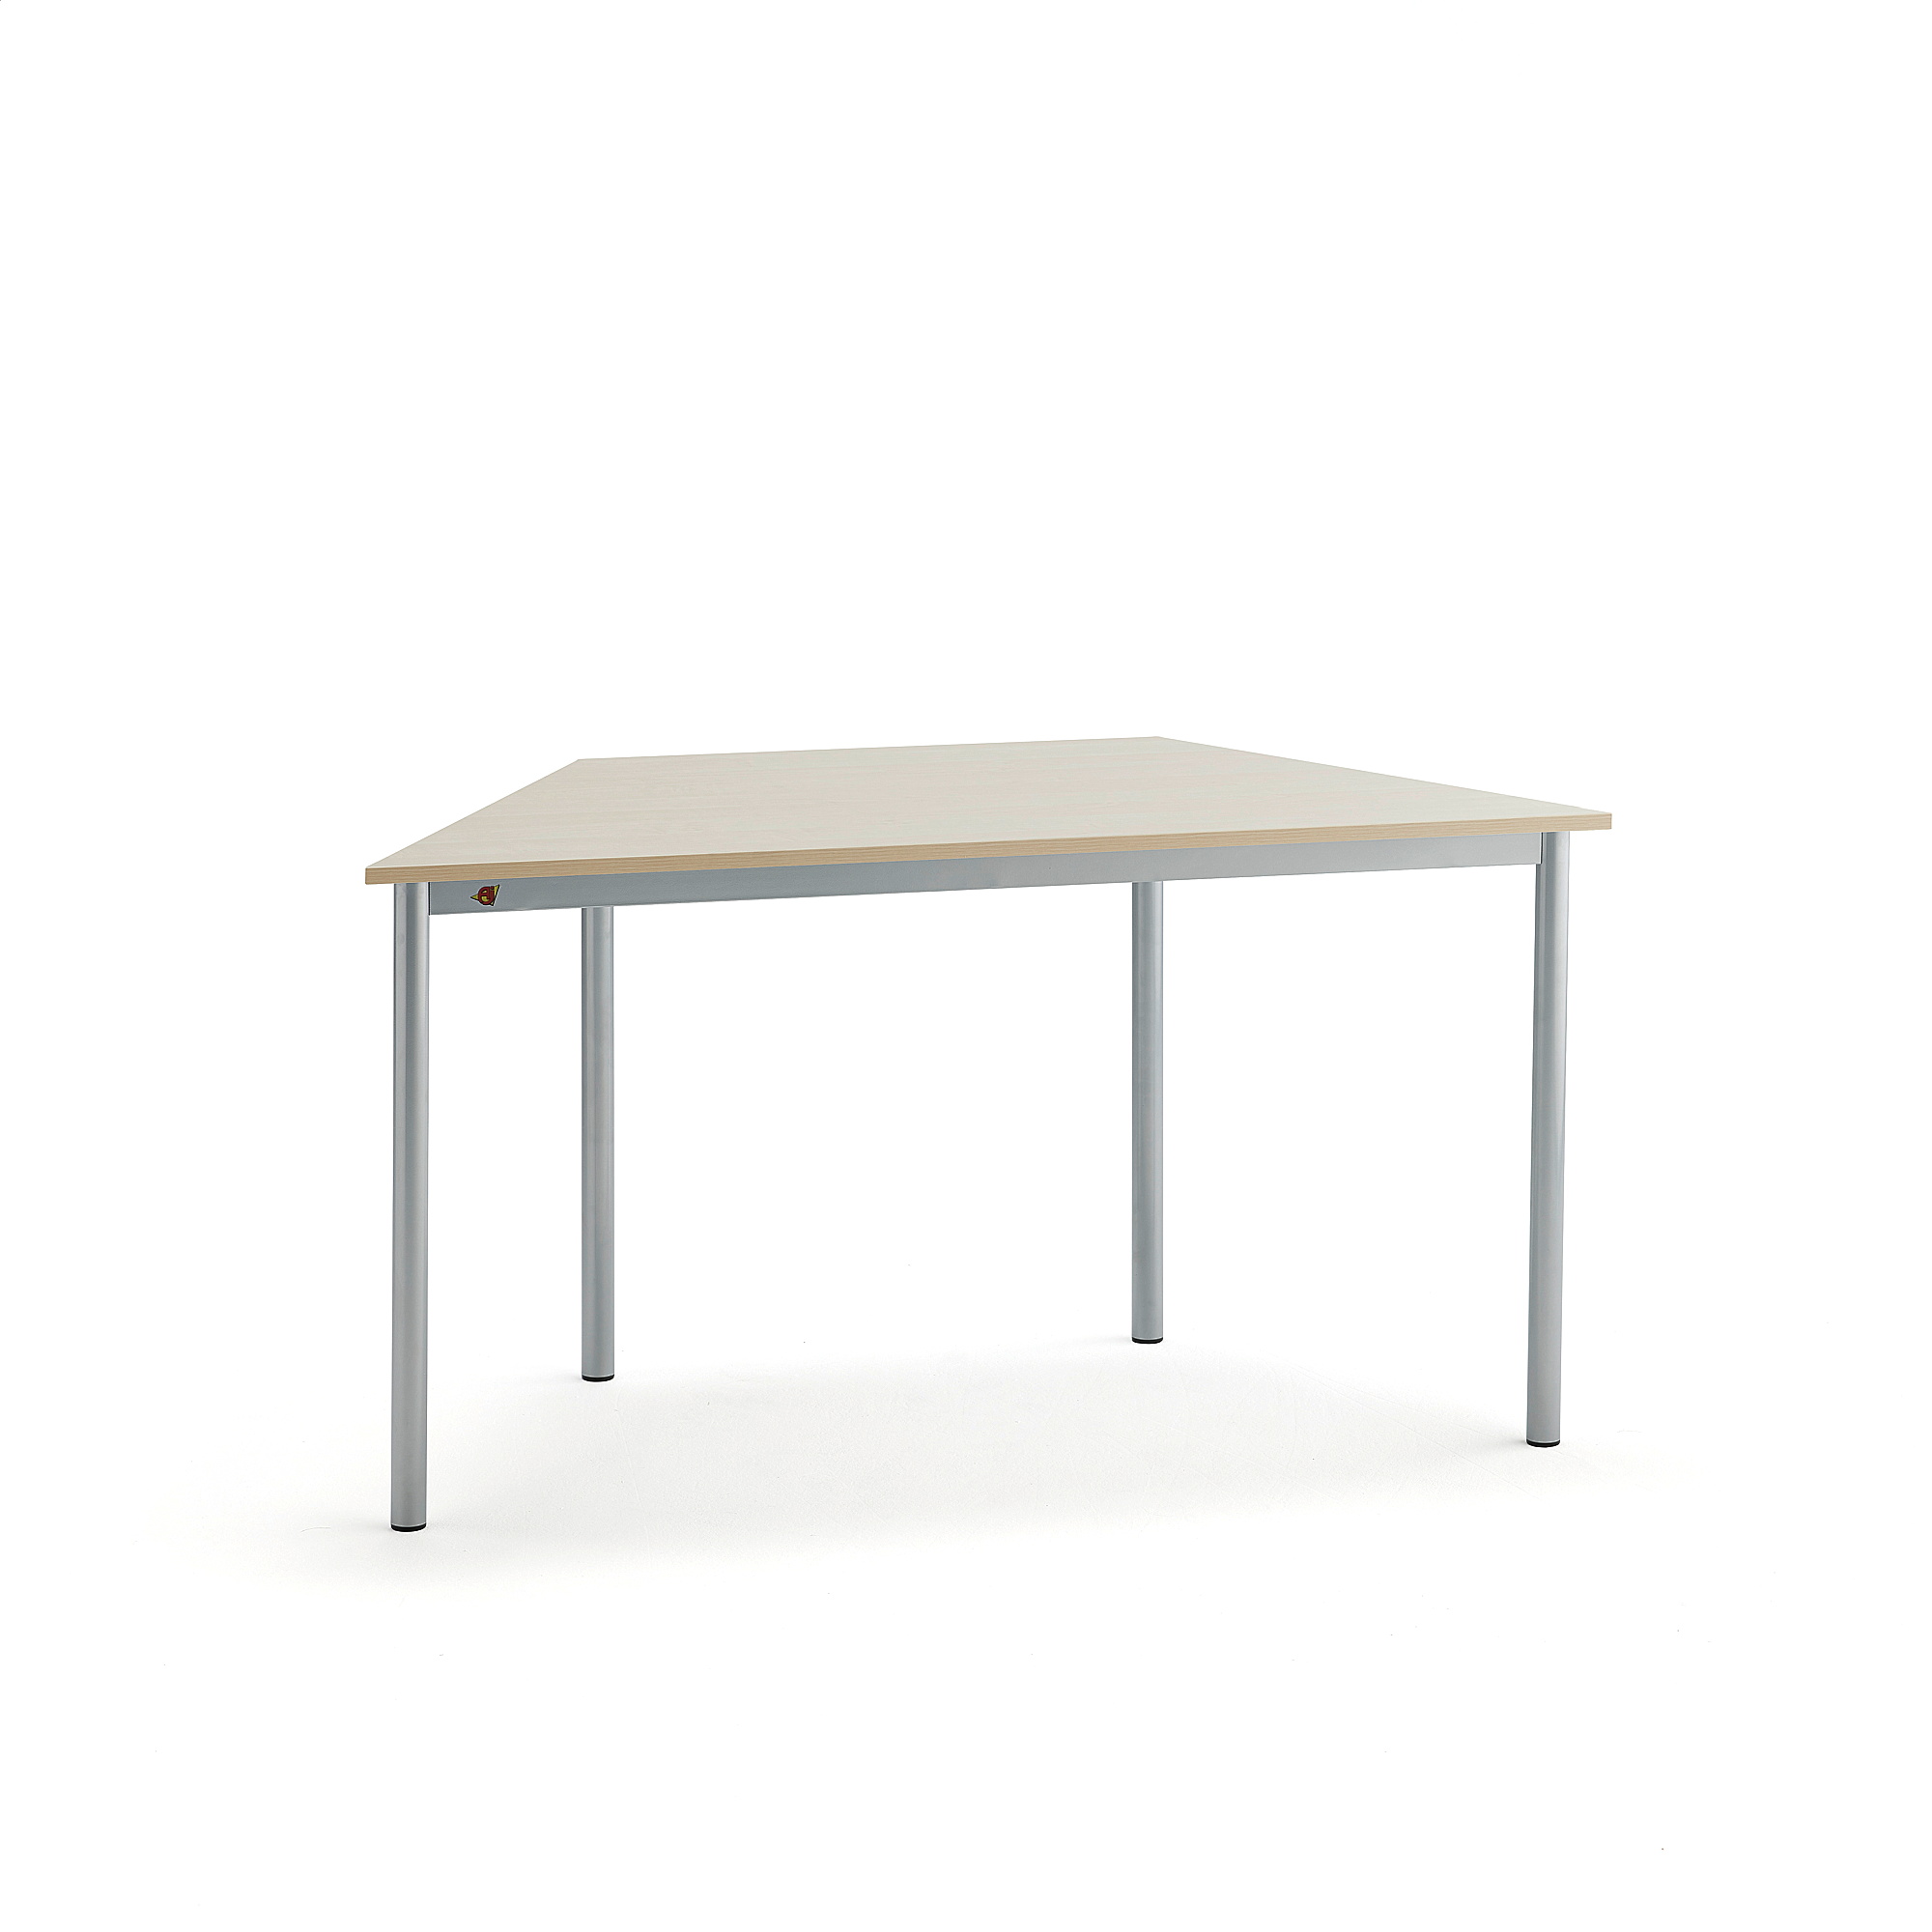 Stůl SONITUS TRAPETS, 1200x600x720 mm, stříbrné nohy, HPL deska tlumící hluk, bříza